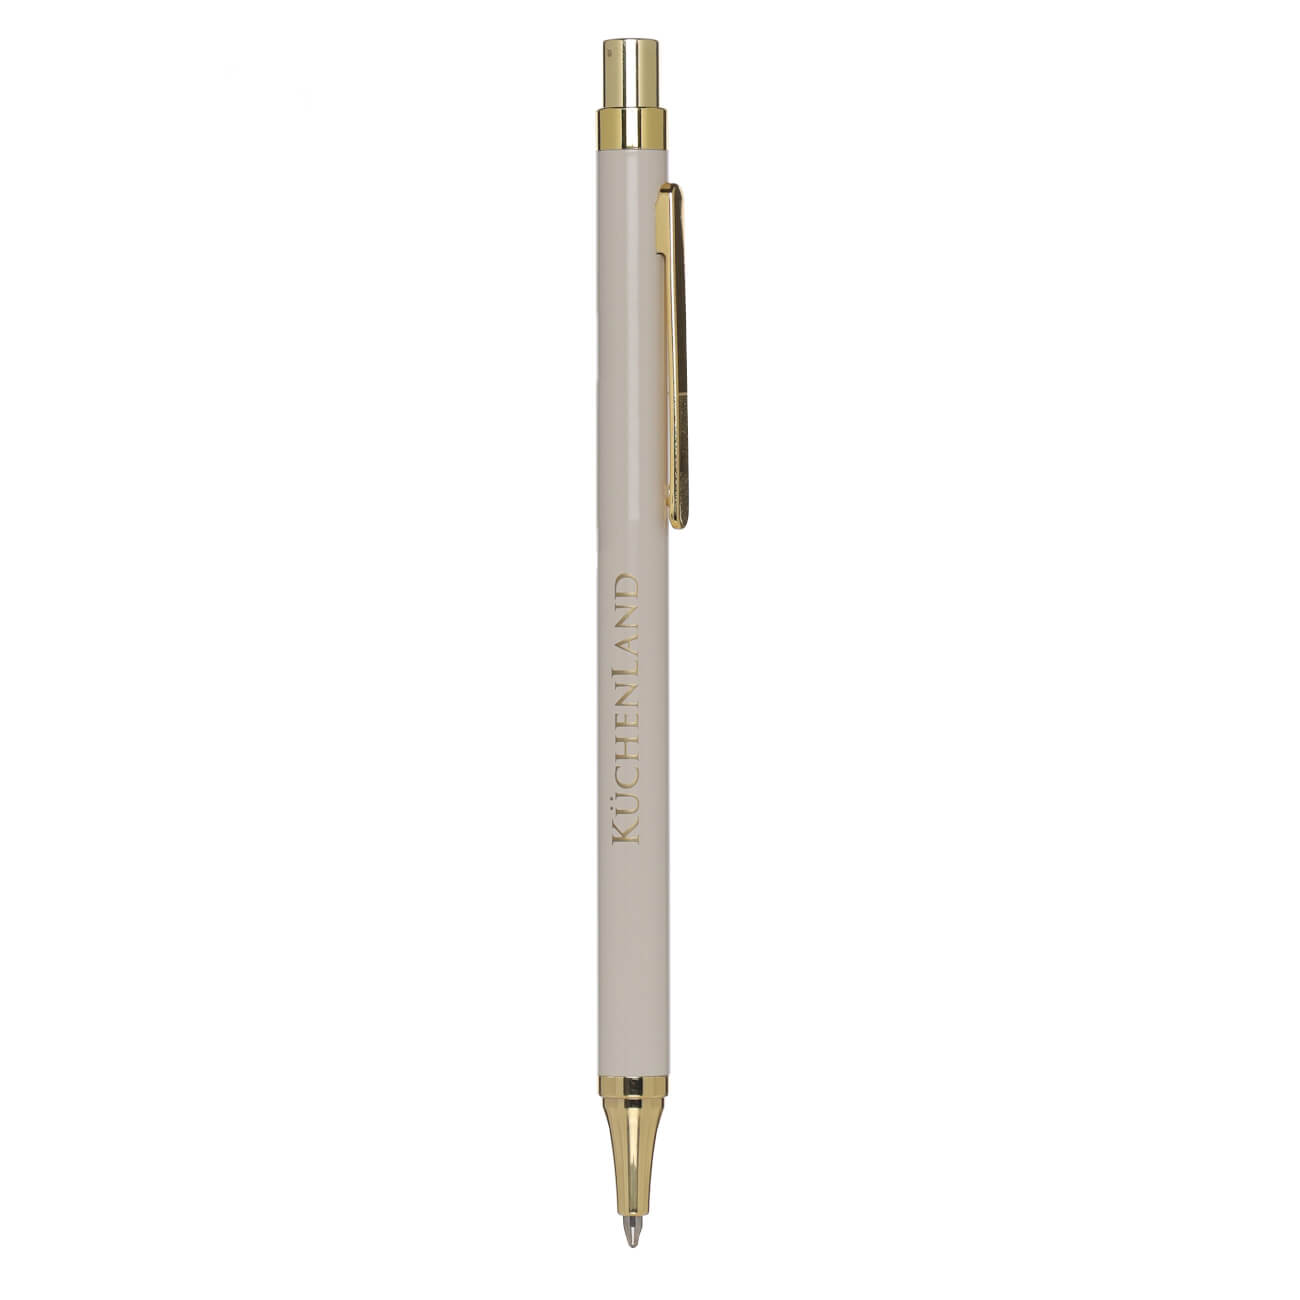 Ручка шариковая, 14 см, металл/пластик, бежевая, Eclipse ручка подарочная шариковая в кожзам футляре поворотная vip корпус золотистый корпус